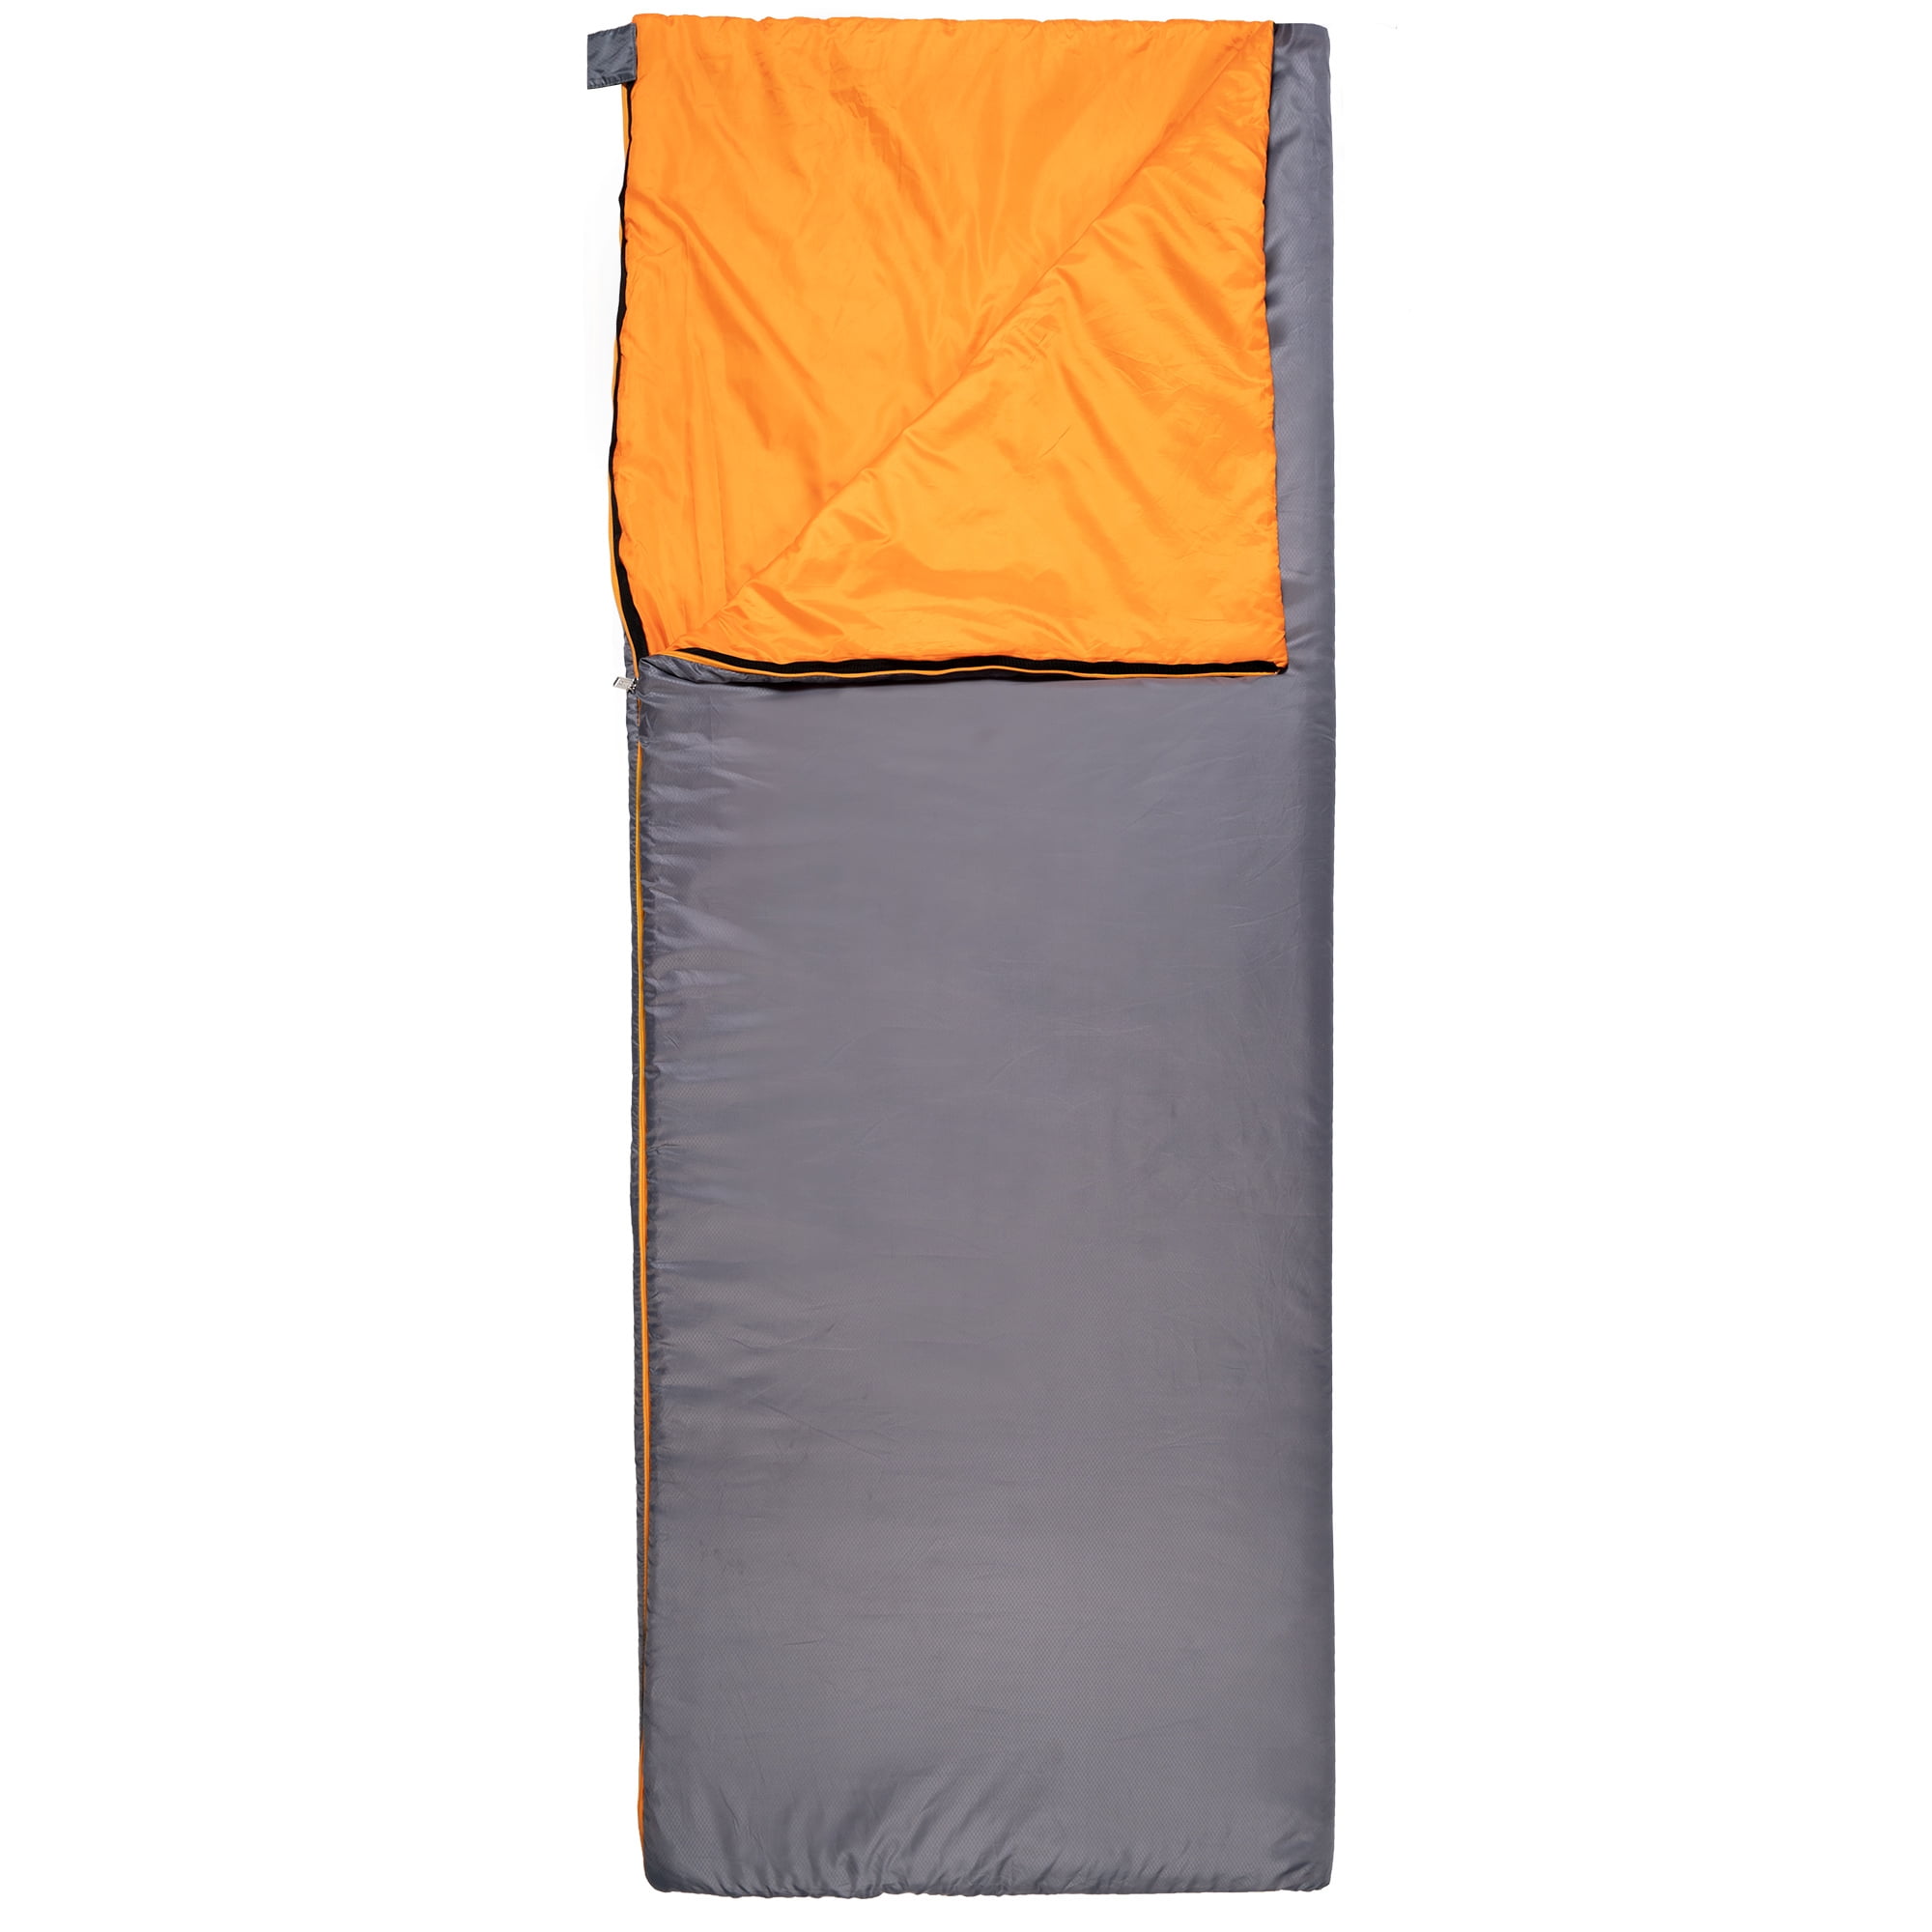 lightweight rectangular sleeping bag